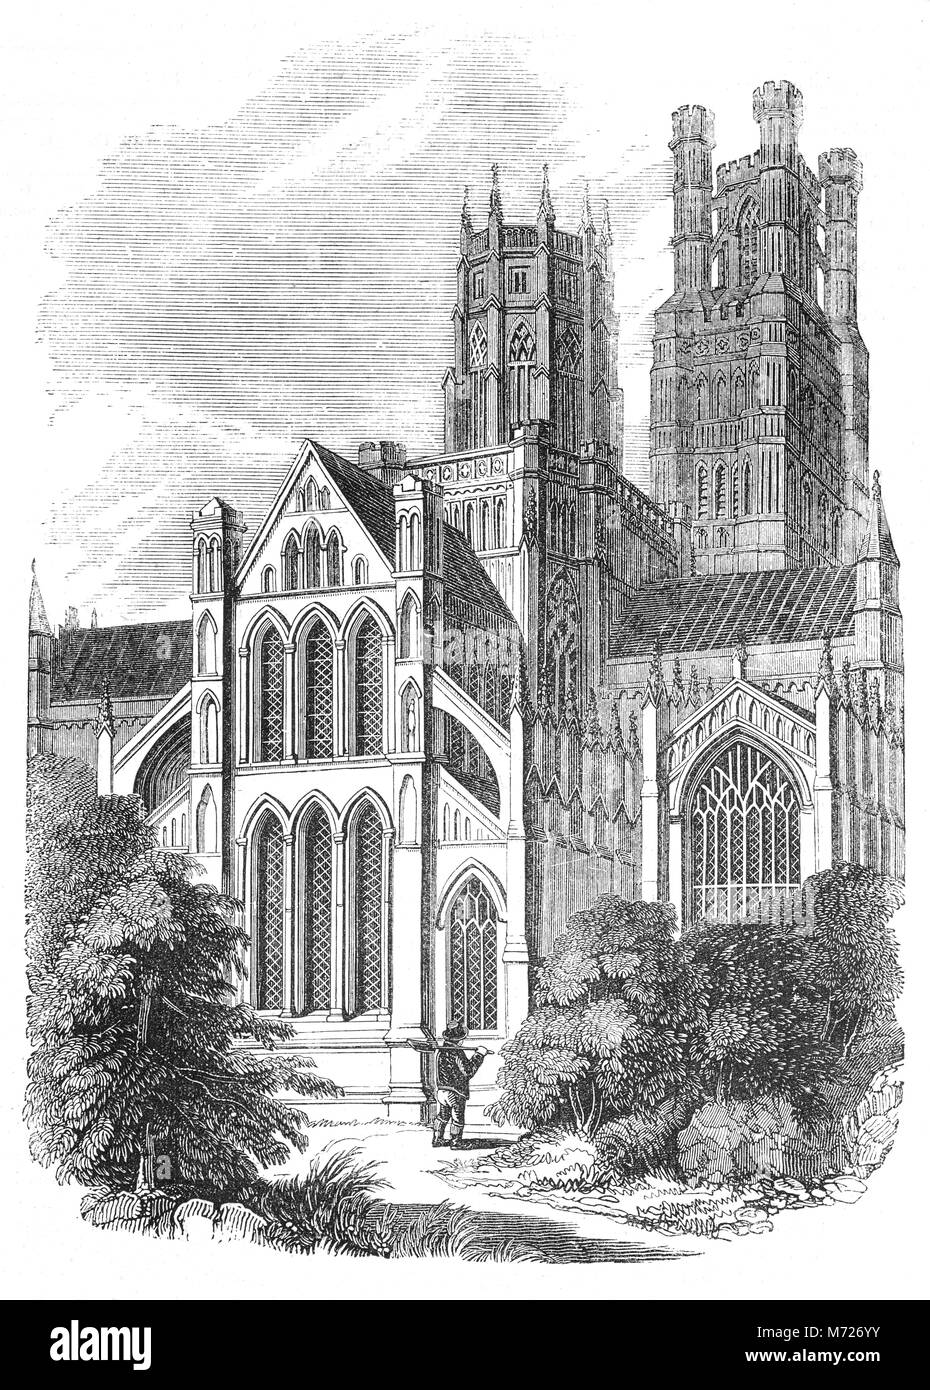 Die Kathedrale von Ely hat seinen Ursprung in der AD672 Wenn St Etheldreda eine Abtei Kirche gebaut. Das heutige Gebäude stammt aus 1083, und der Kathedrale Status wurde es im Jahre 1109 gewährt. Gebaut in einem monumentalen romanischen Stil, mit üppiger Dekoriert Gotik, seine wichtigste Funktion ist die zentrale achteckiger Turm, mit Laterne, die eine eindeutige interne bietet Platz und, zusammen mit der West Tower, dominiert die Landschaft in der Umgebung. Stadt Ely, Cambridgeshire, England. Stockfoto